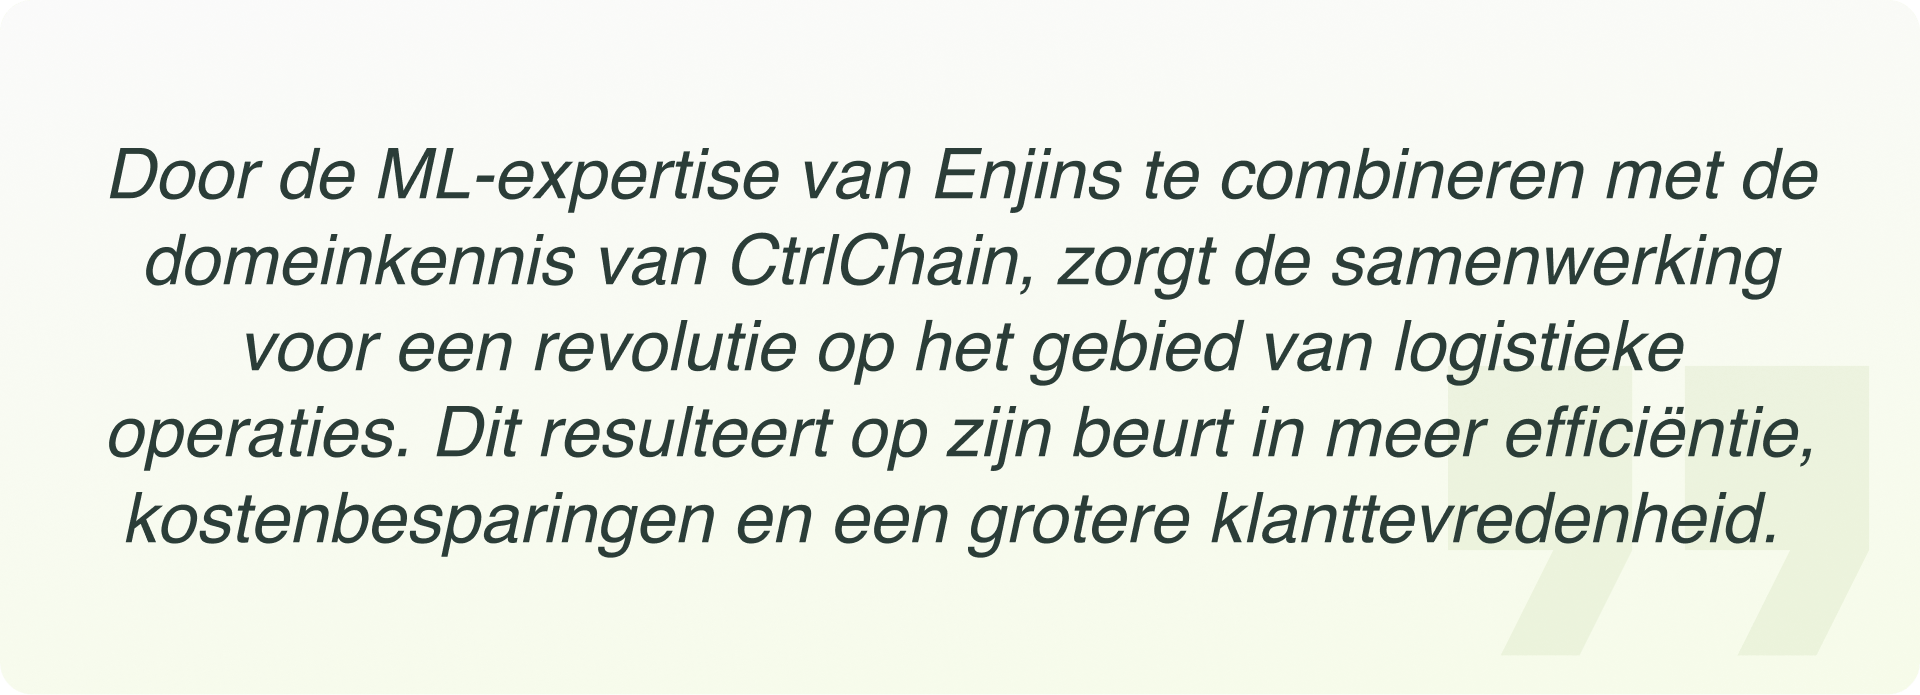 Quote Dutch1-min